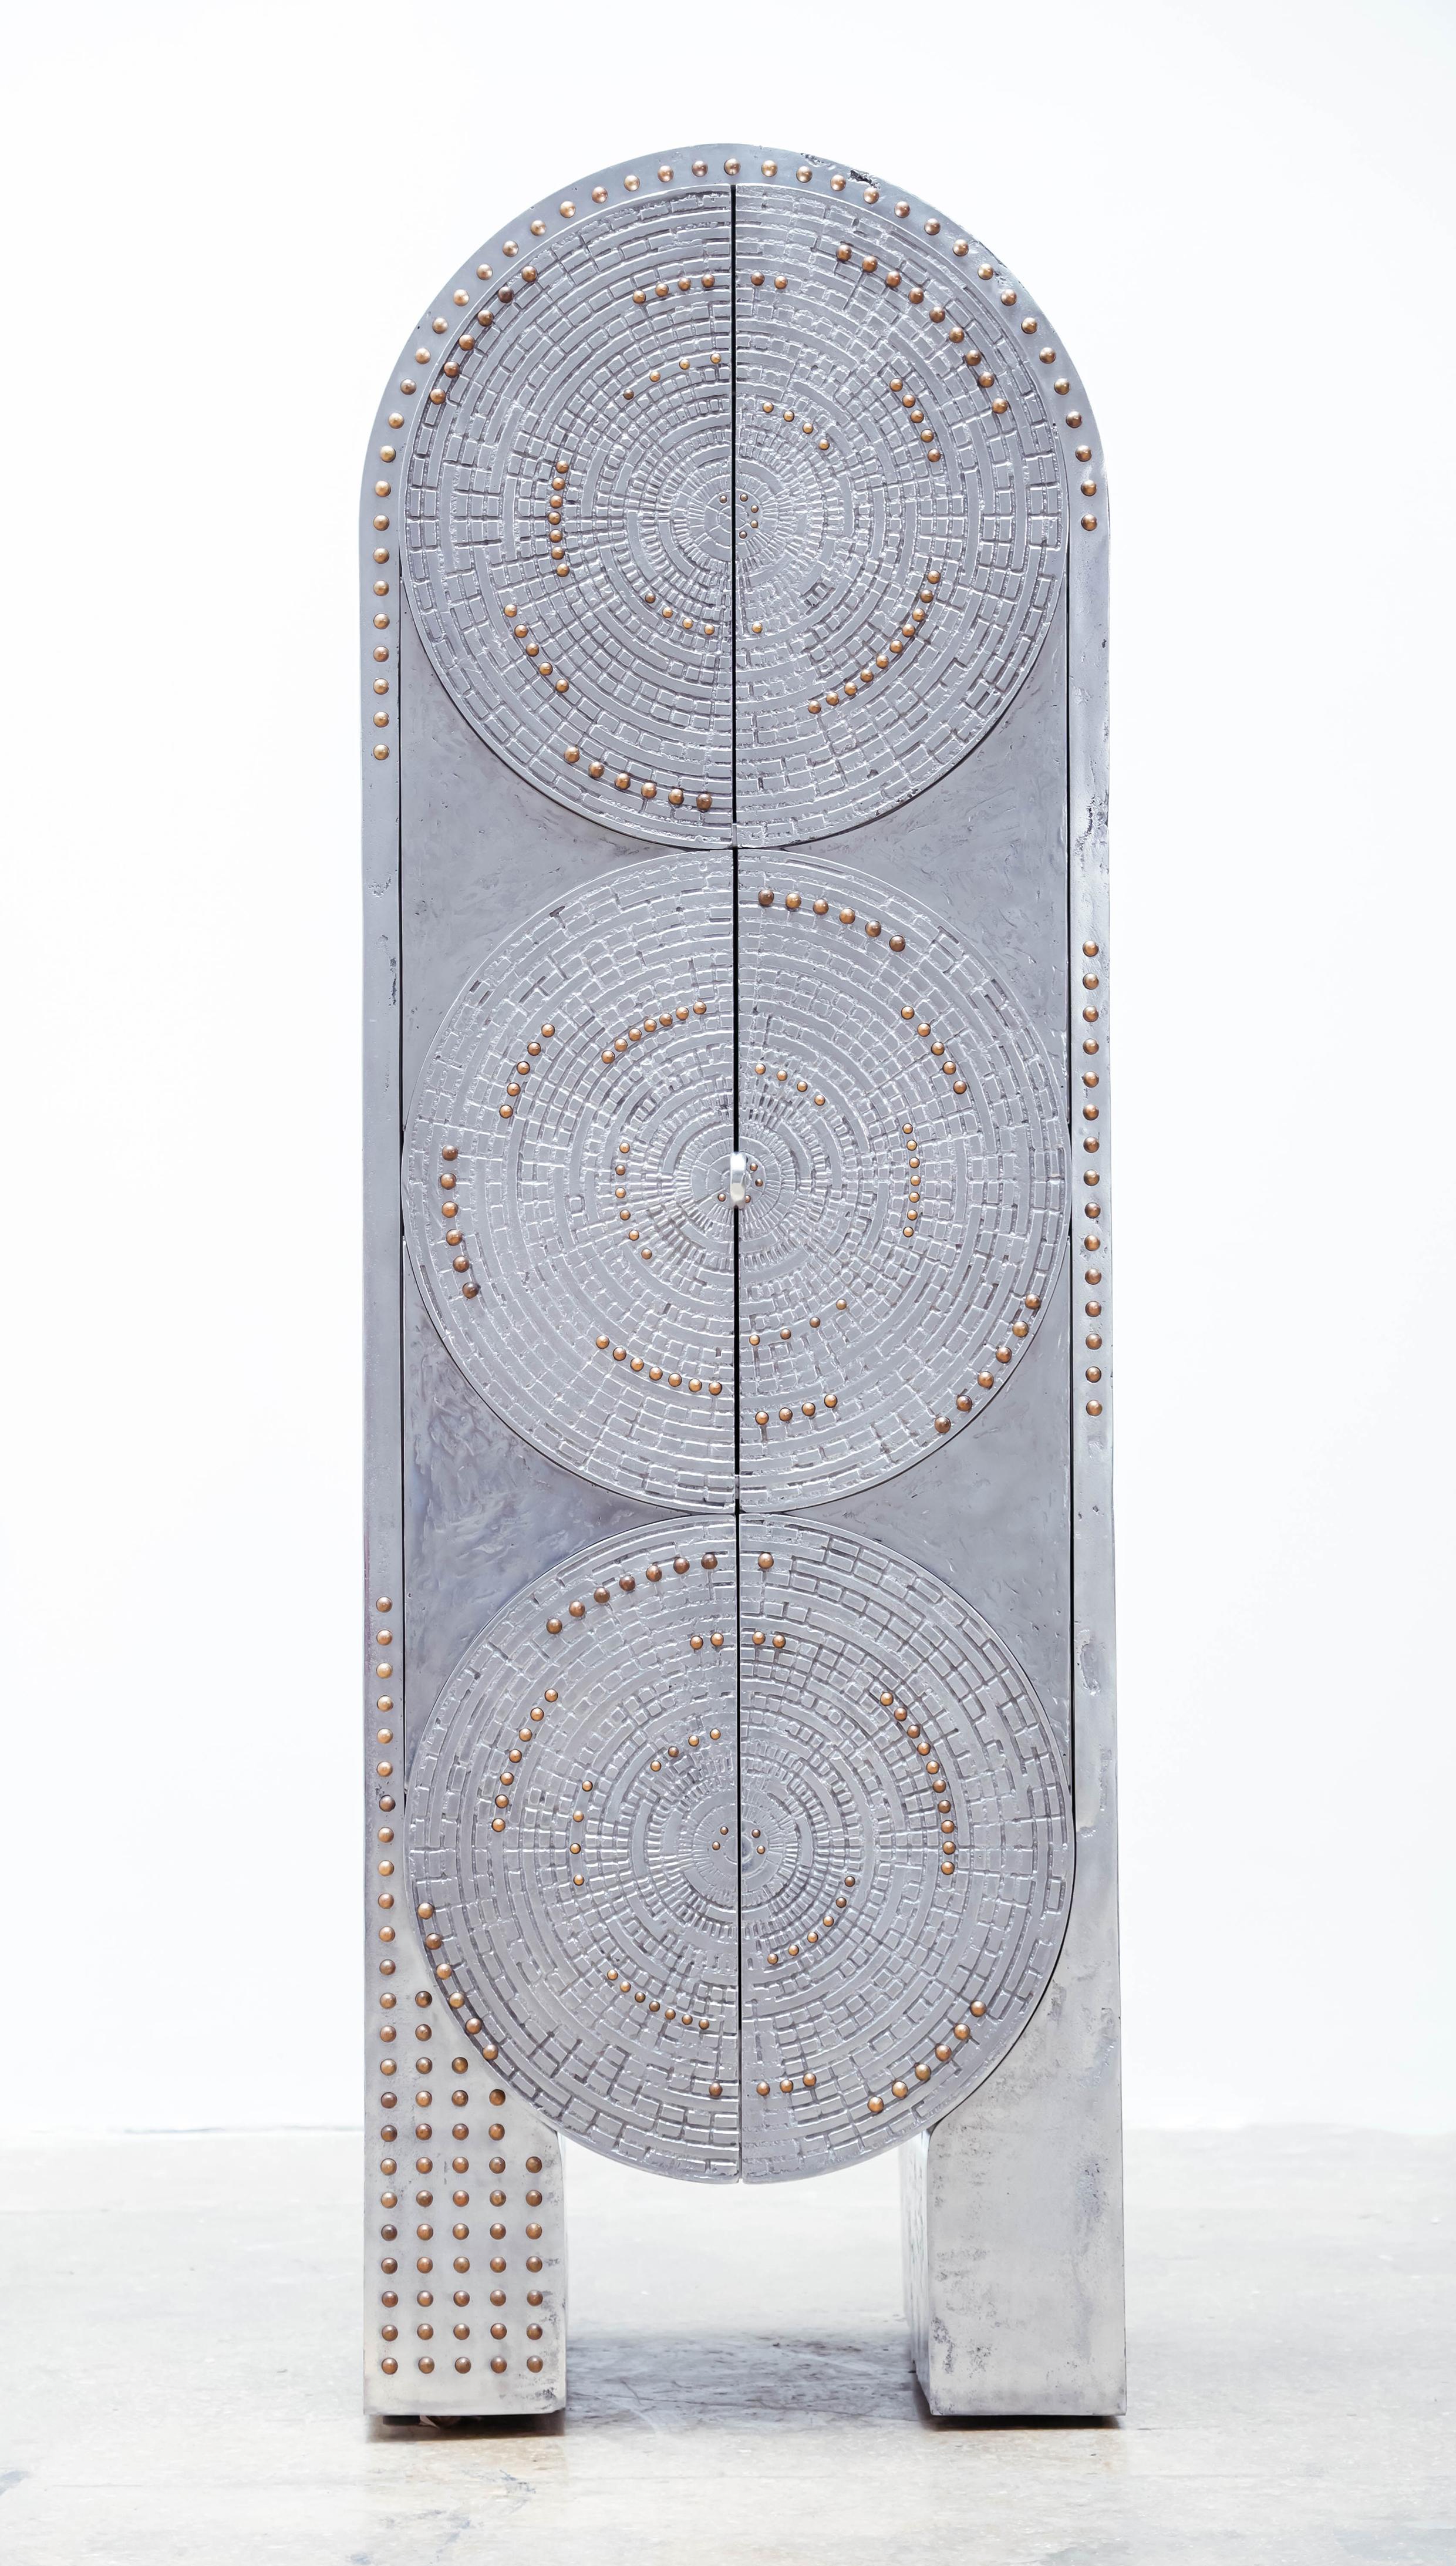 Armoire Galaxy d'Eva Szumilas
Dimensions : D 58 x L 58 x H 174 cm.
MATERIAL : Aluminium moulé, laiton moulé, tôle d'aluminium, tôle d'acier inoxydable miroir.


Eva Szumilas est une designer libano-polonaise. Elle a étudié l'architecture à